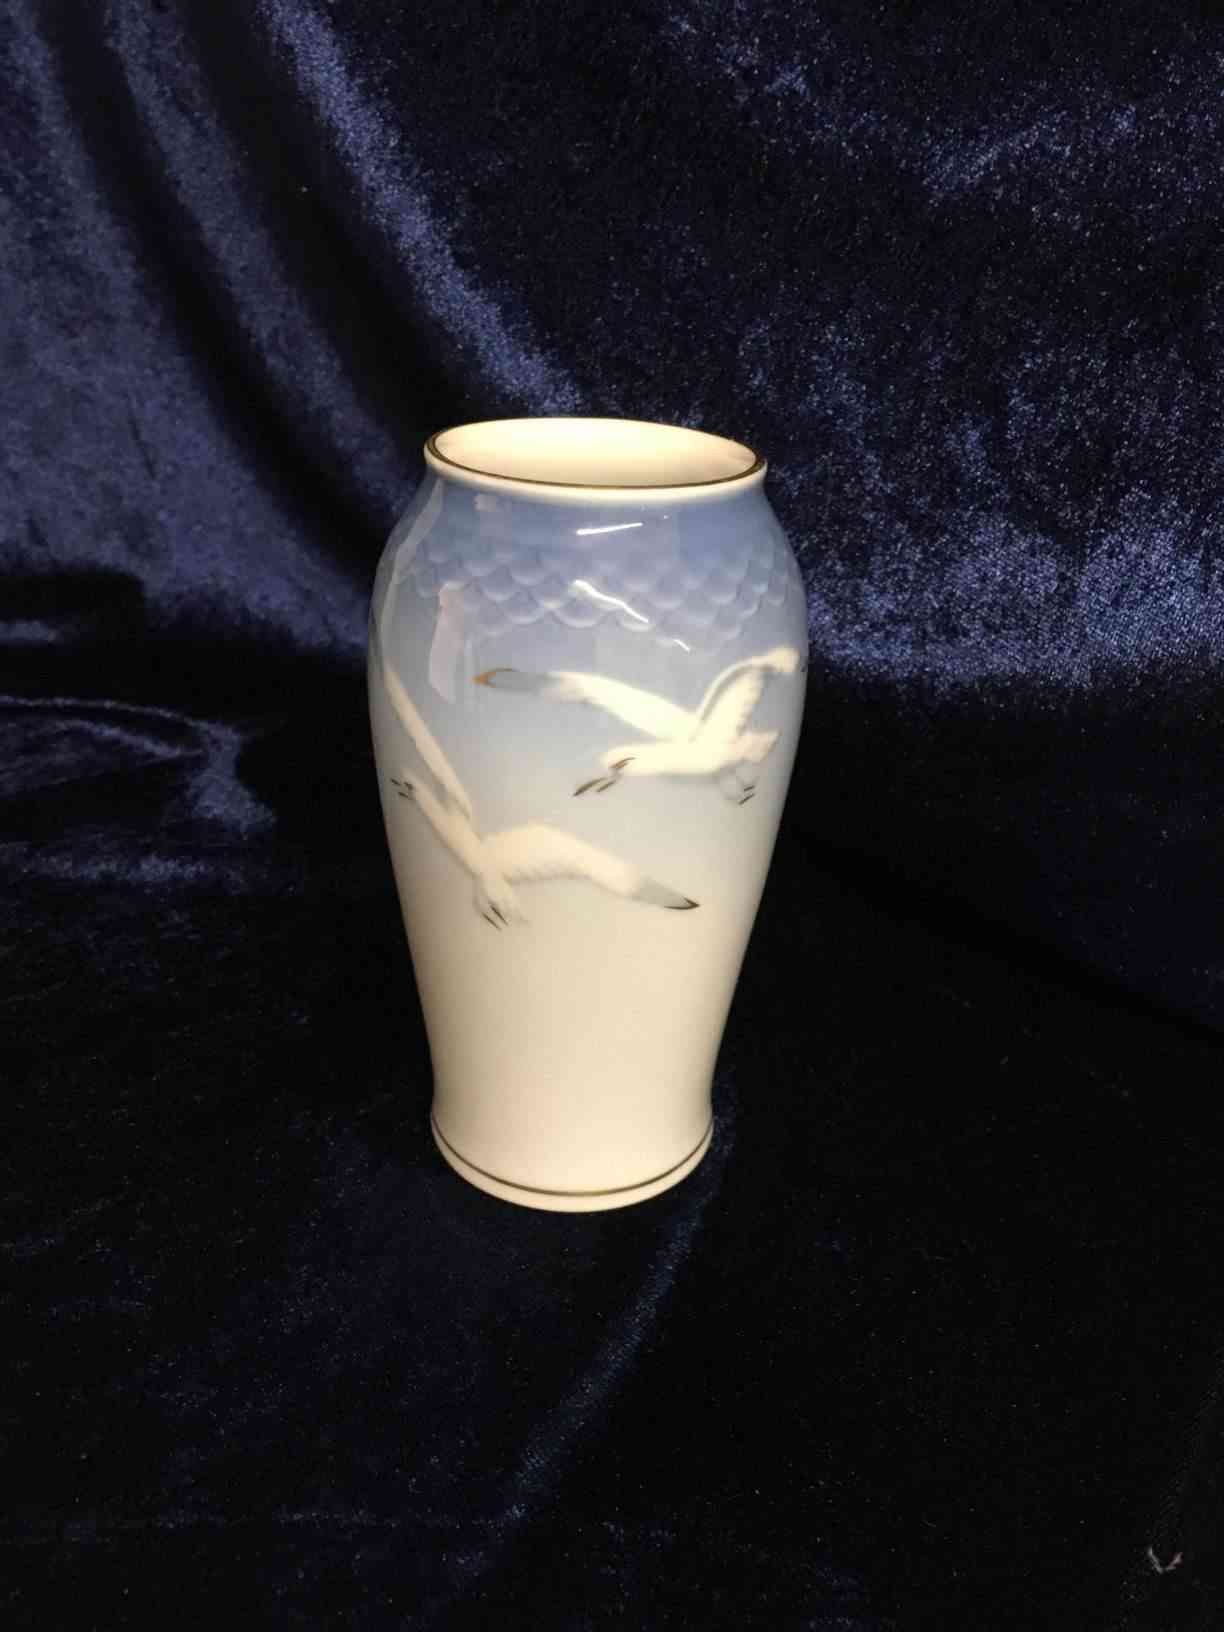 B&G - Vase med guld 13,5 cm høj i 1. sortering og perfekt stand. Pris: 400,- Kr.